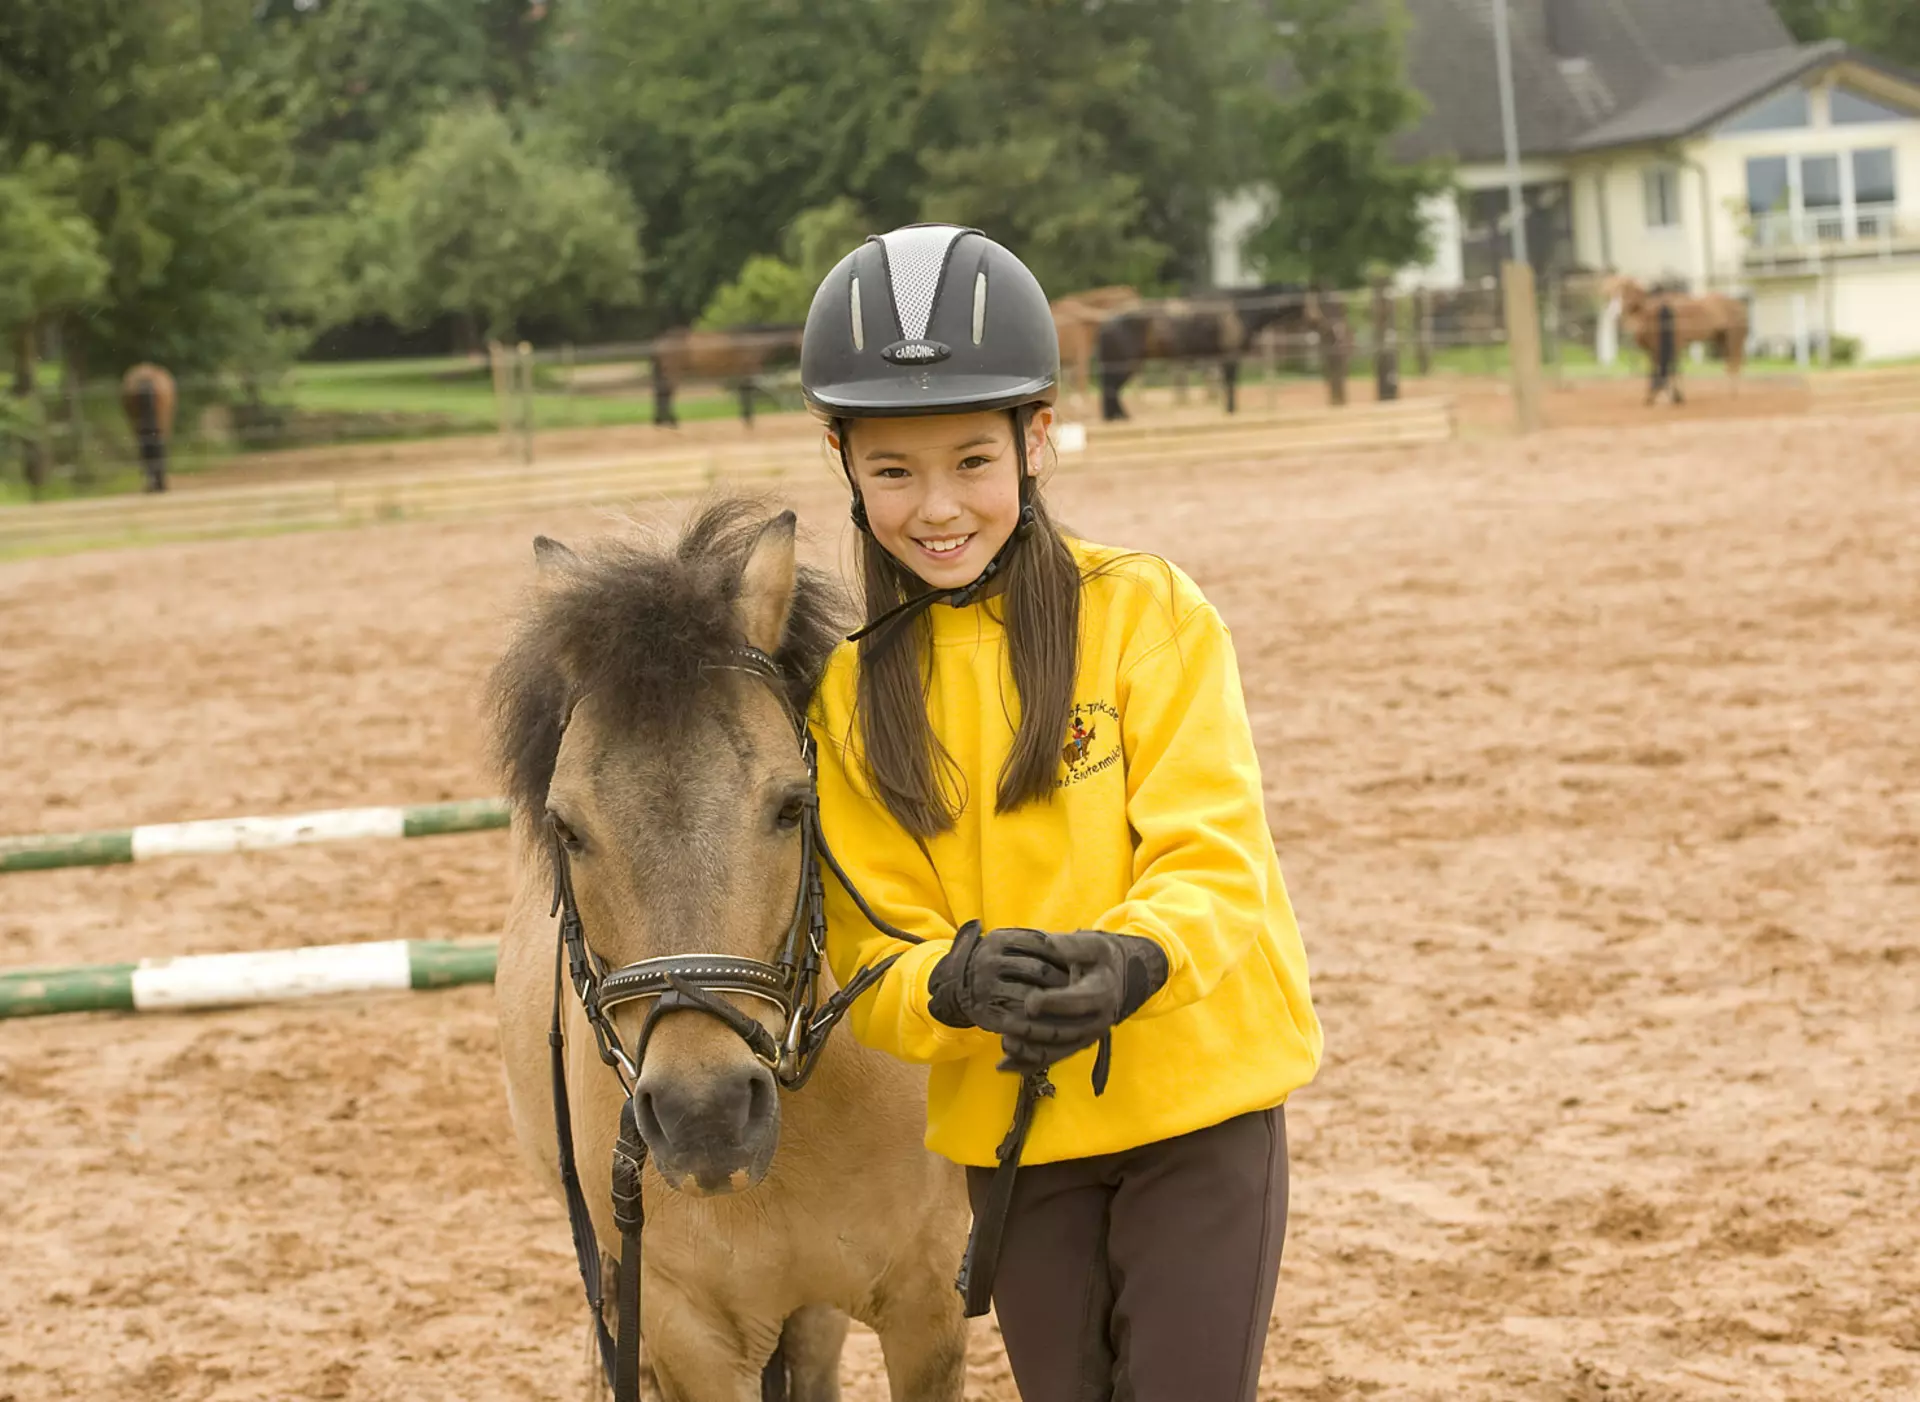 Ein Urlaub mit Pferden auf Reiterhöfen ist ein tolles Erlebnis für Kinder und Erwachsene.